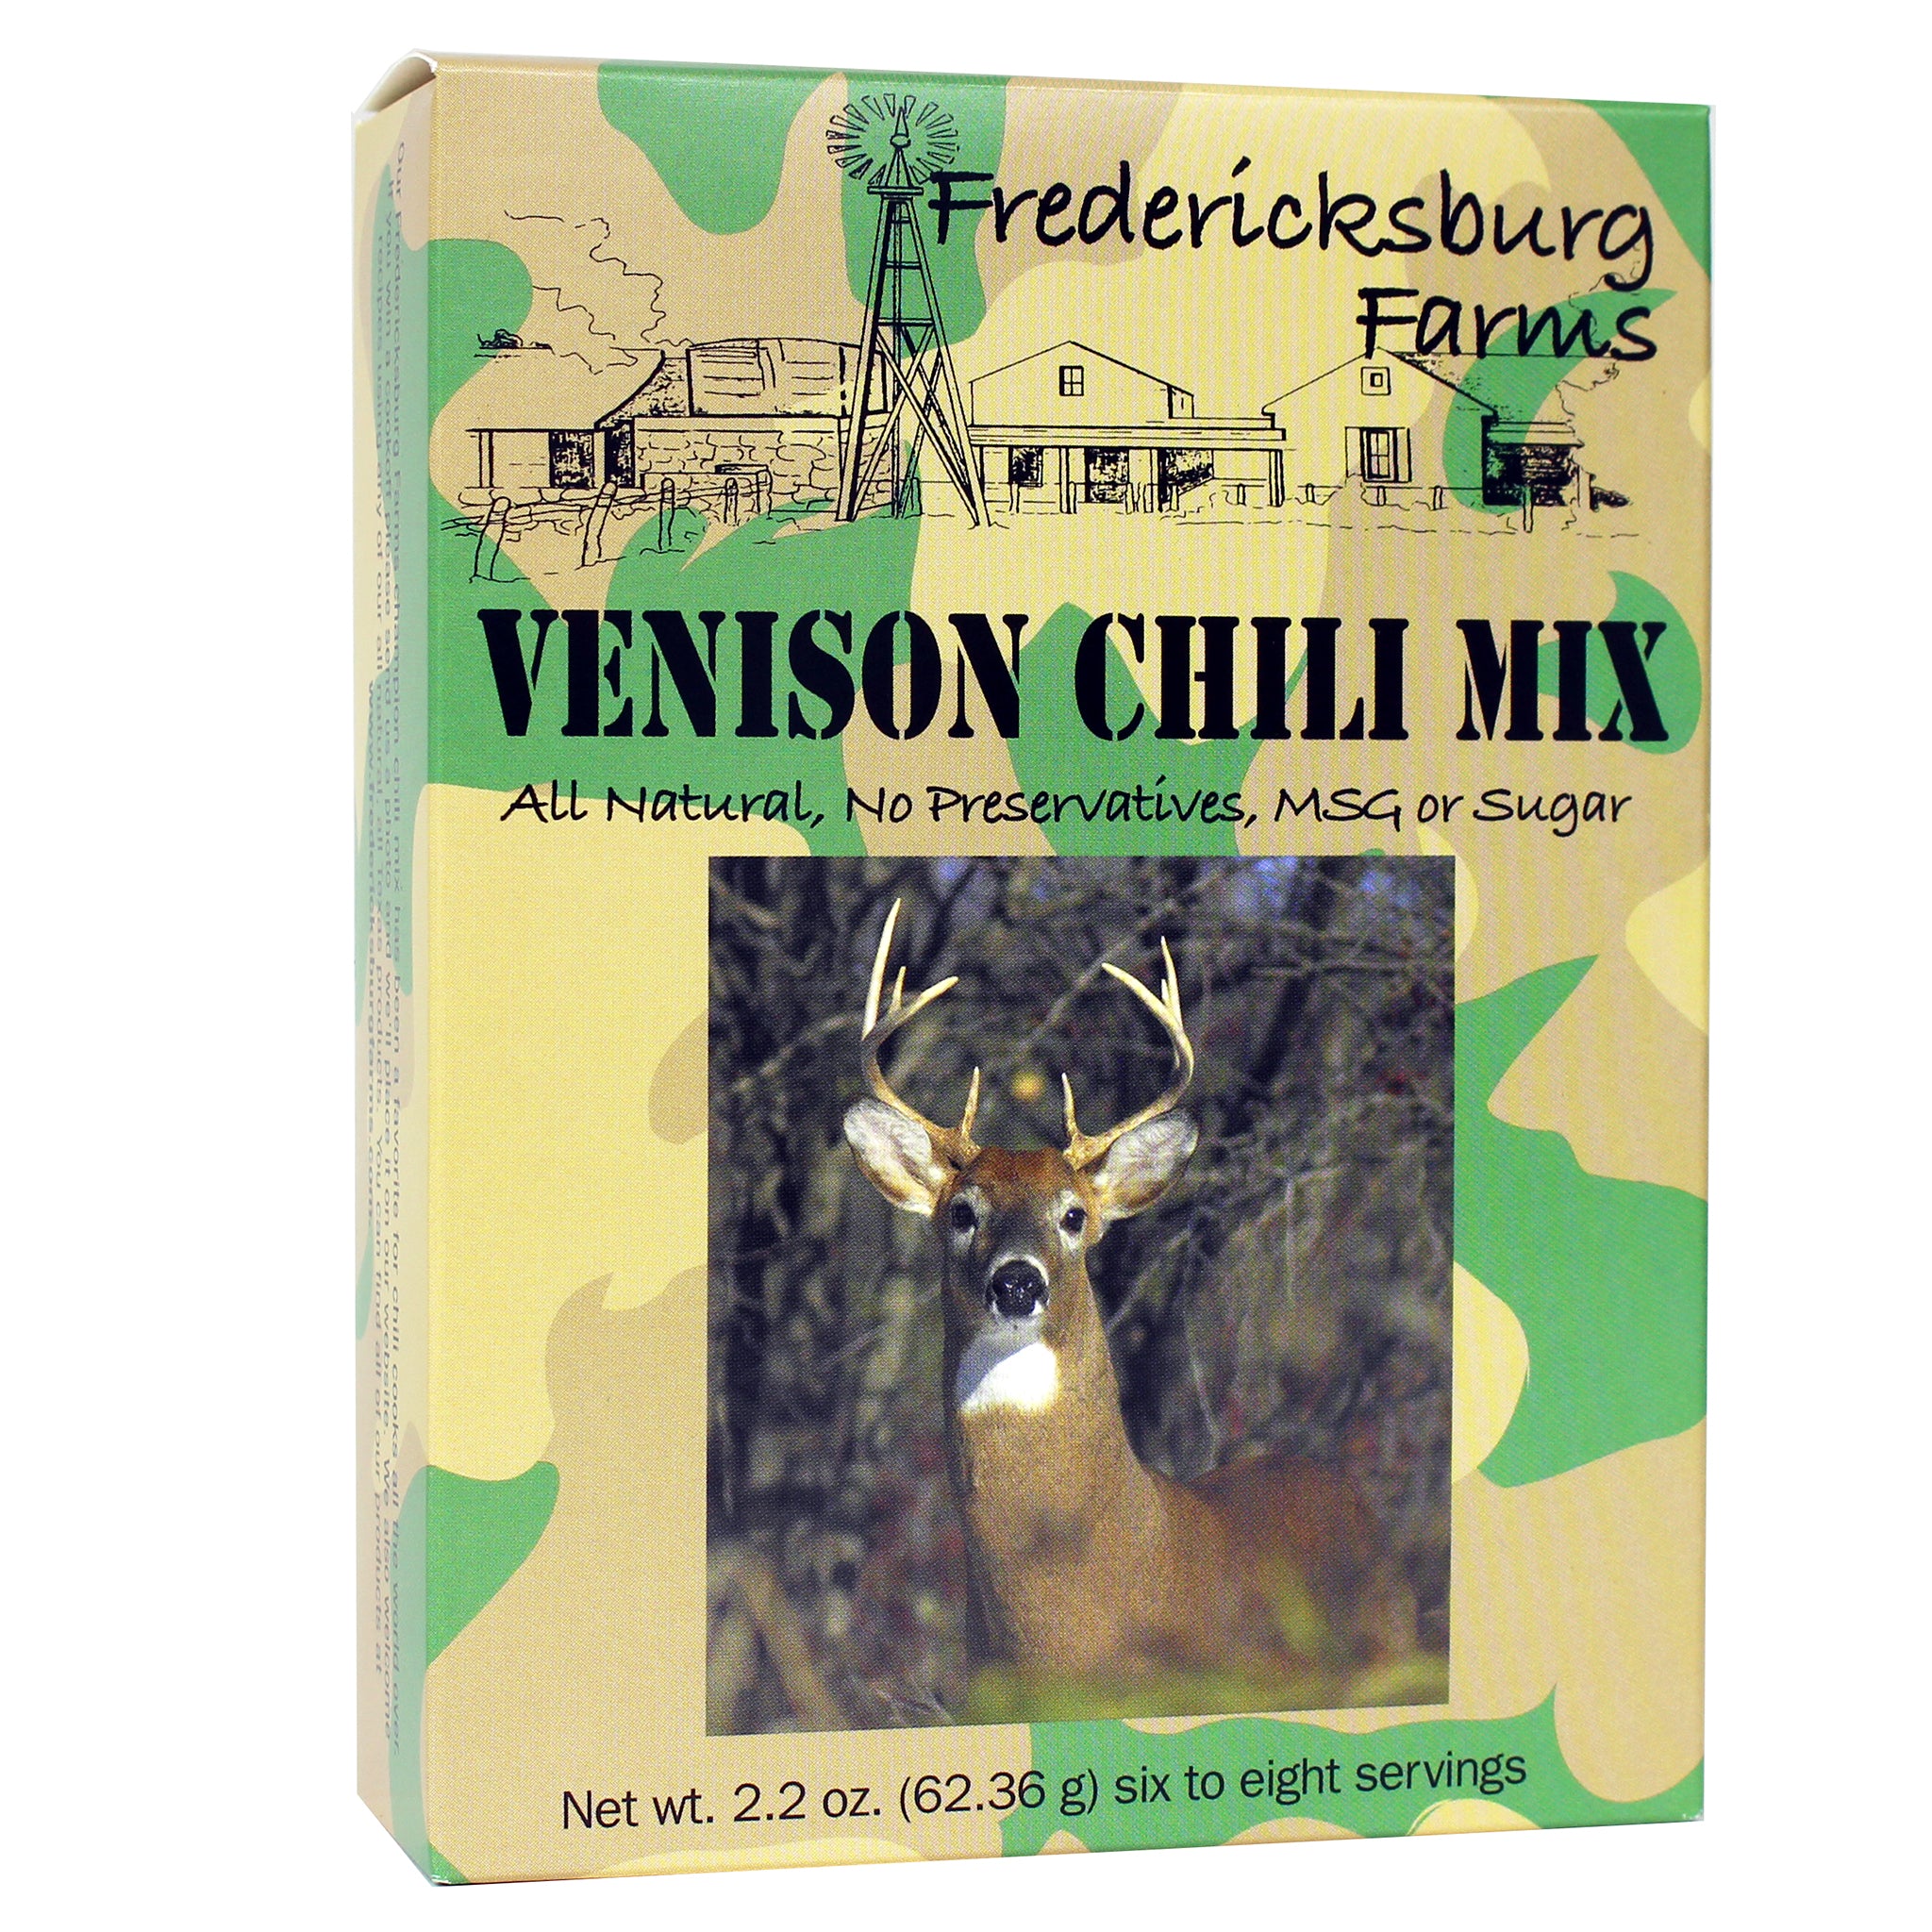 Venison Chili Mix - Fredericksburg Farms